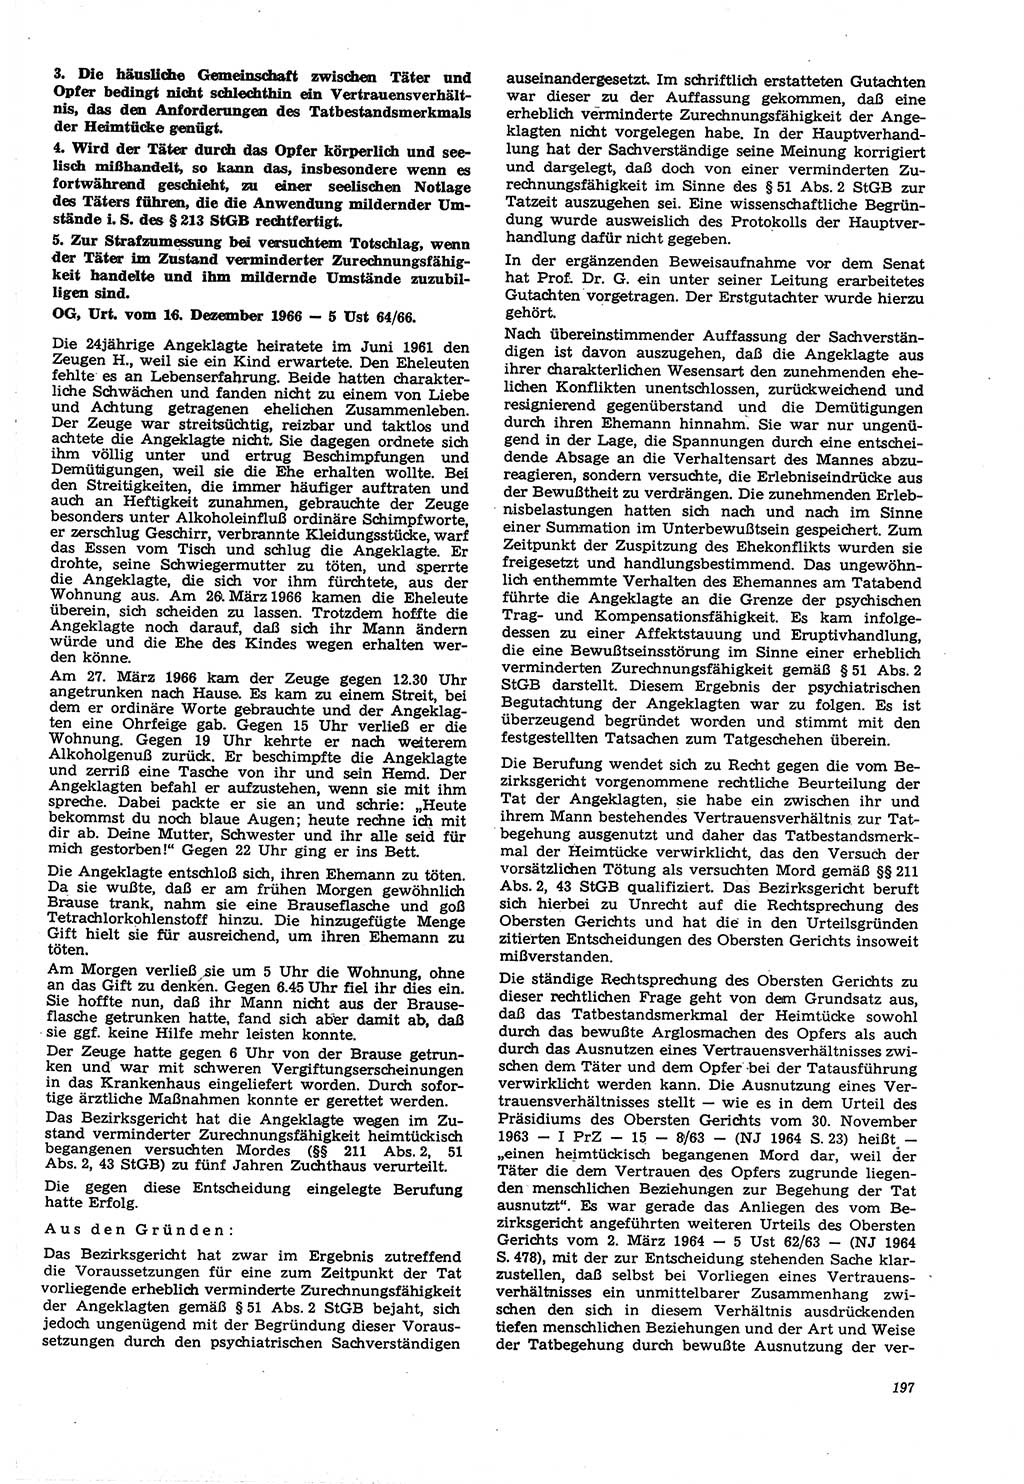 Neue Justiz (NJ), Zeitschrift für Recht und Rechtswissenschaft [Deutsche Demokratische Republik (DDR)], 21. Jahrgang 1967, Seite 197 (NJ DDR 1967, S. 197)